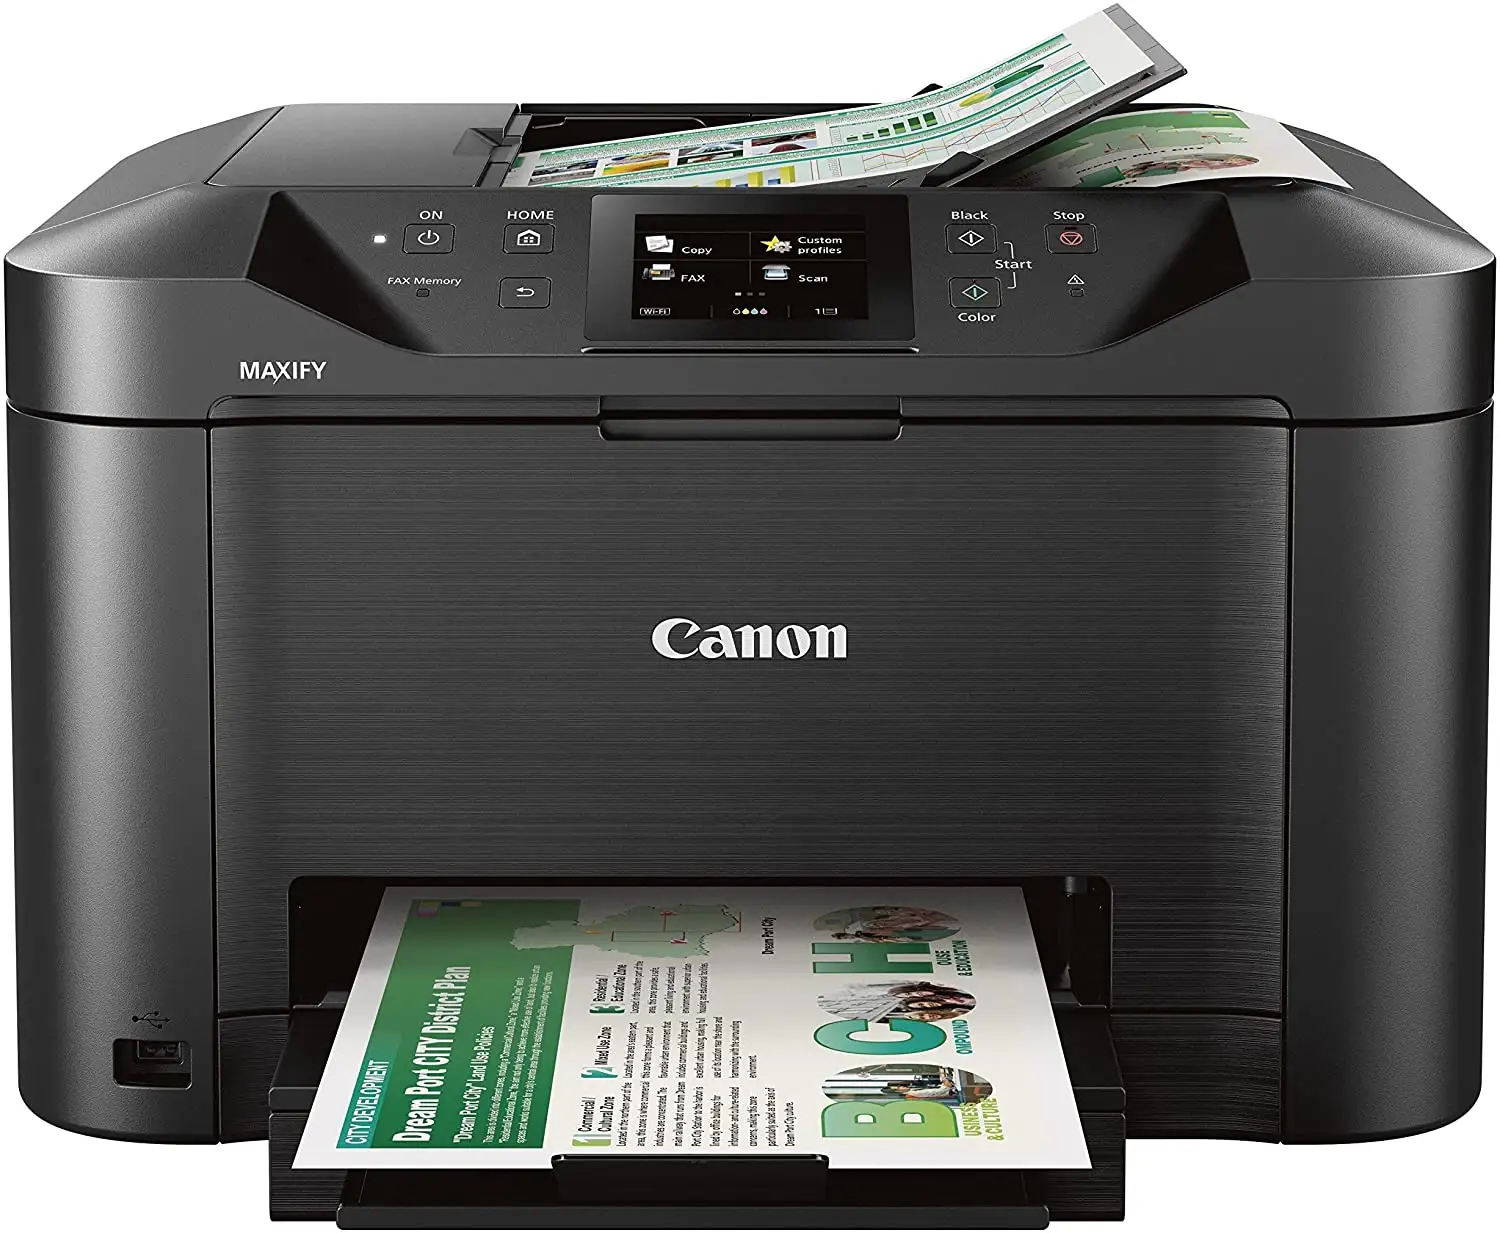 Canon офис и бизнес-MB5120 все-в-одном принтера, сканера, копира и факса, с мобильным телефоном